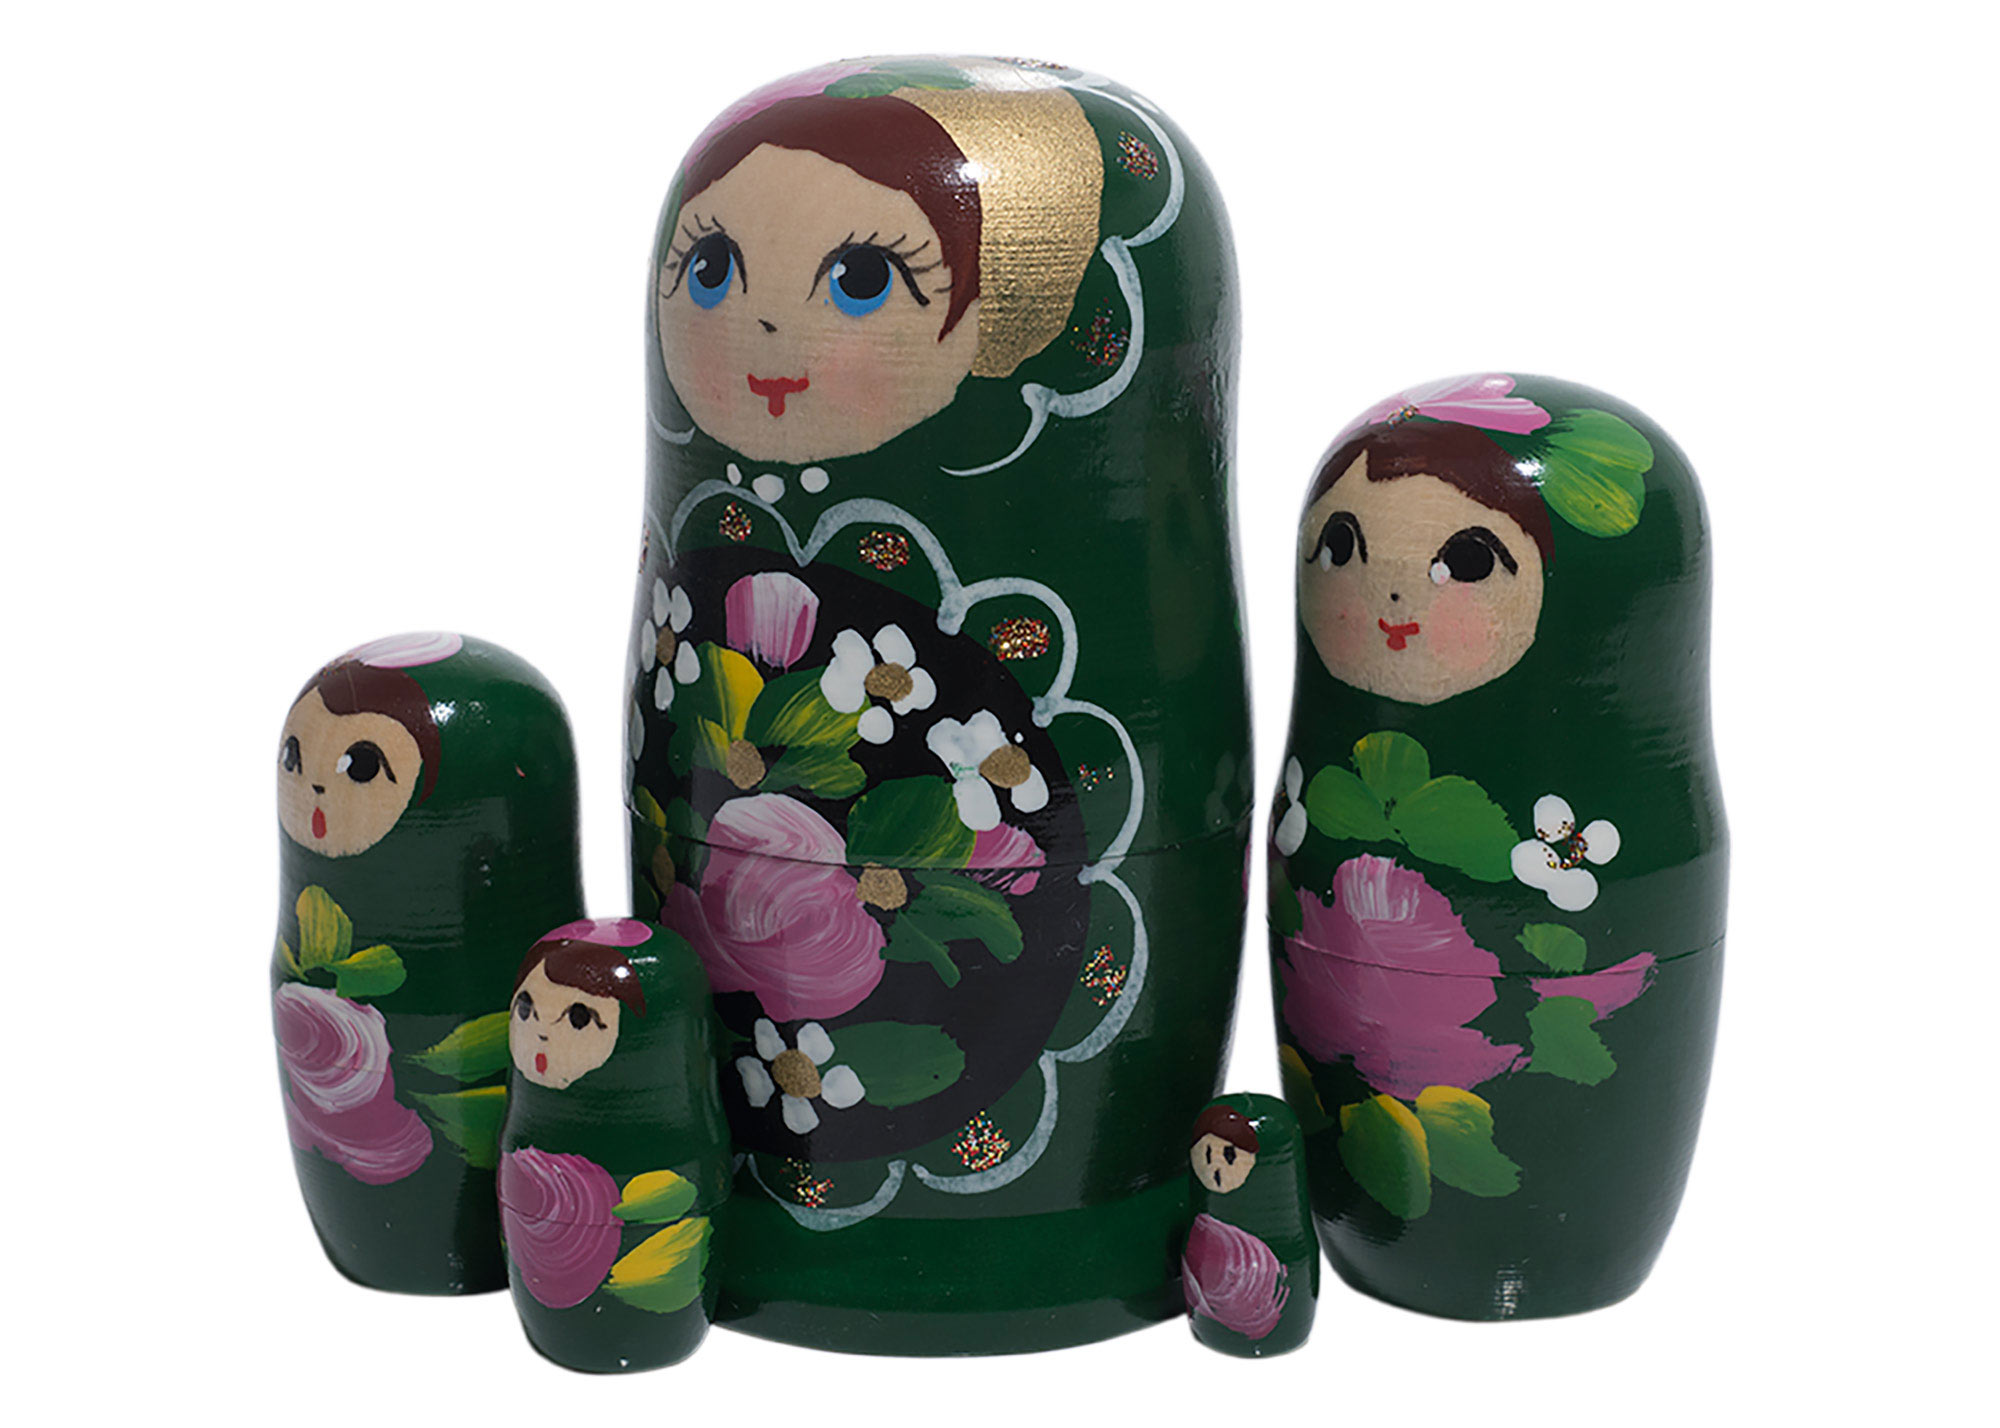 Buy Green Art Nesting Doll 5pc./4" at GoldenCockerel.com